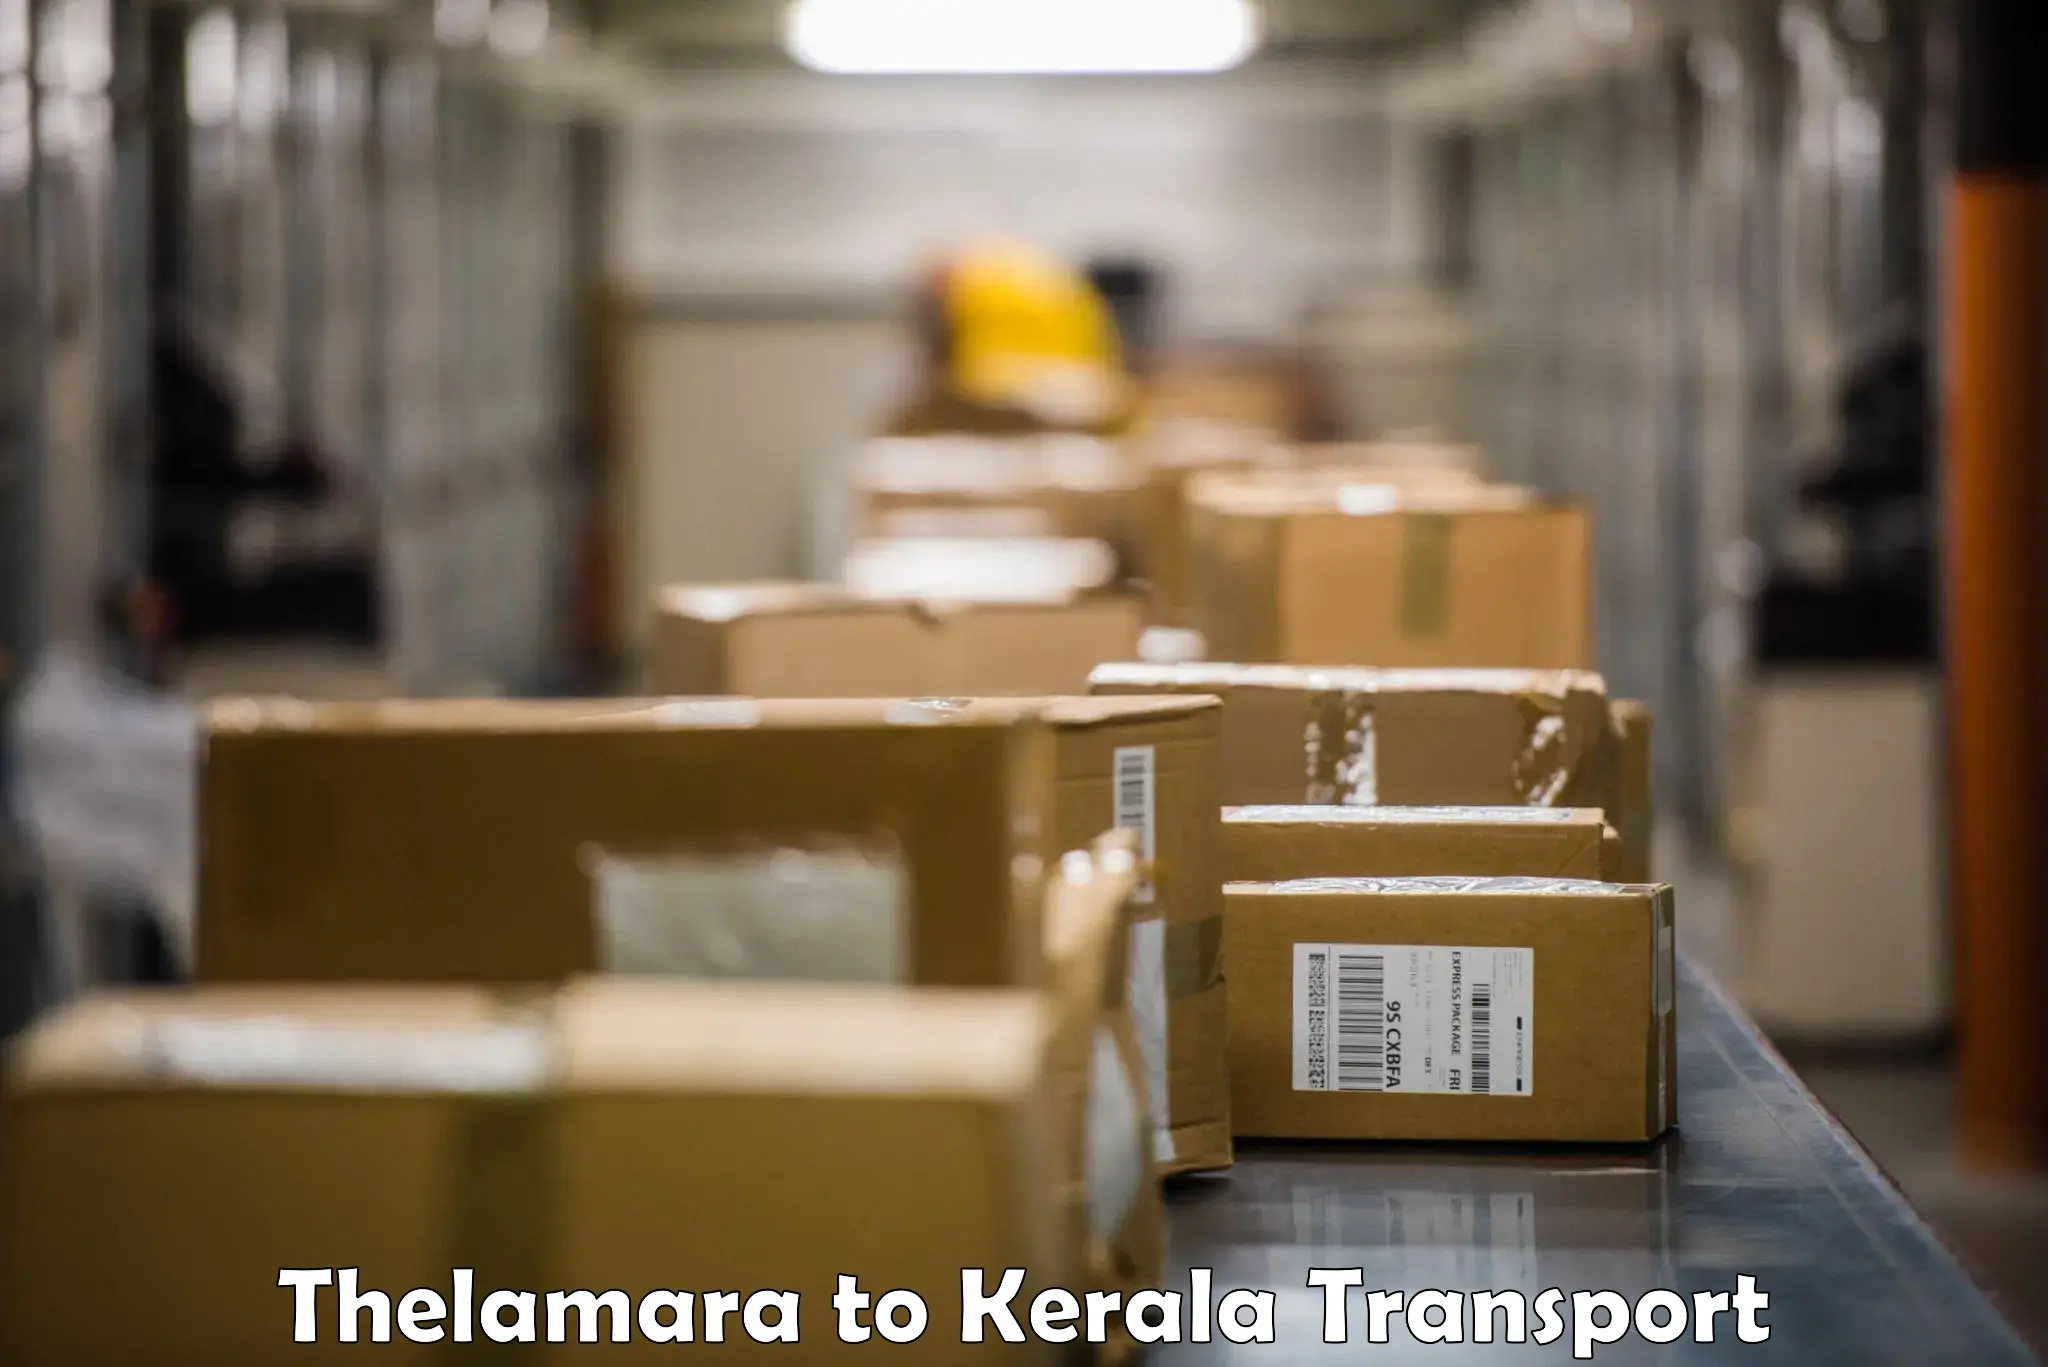 Daily transport service Thelamara to Poojapura